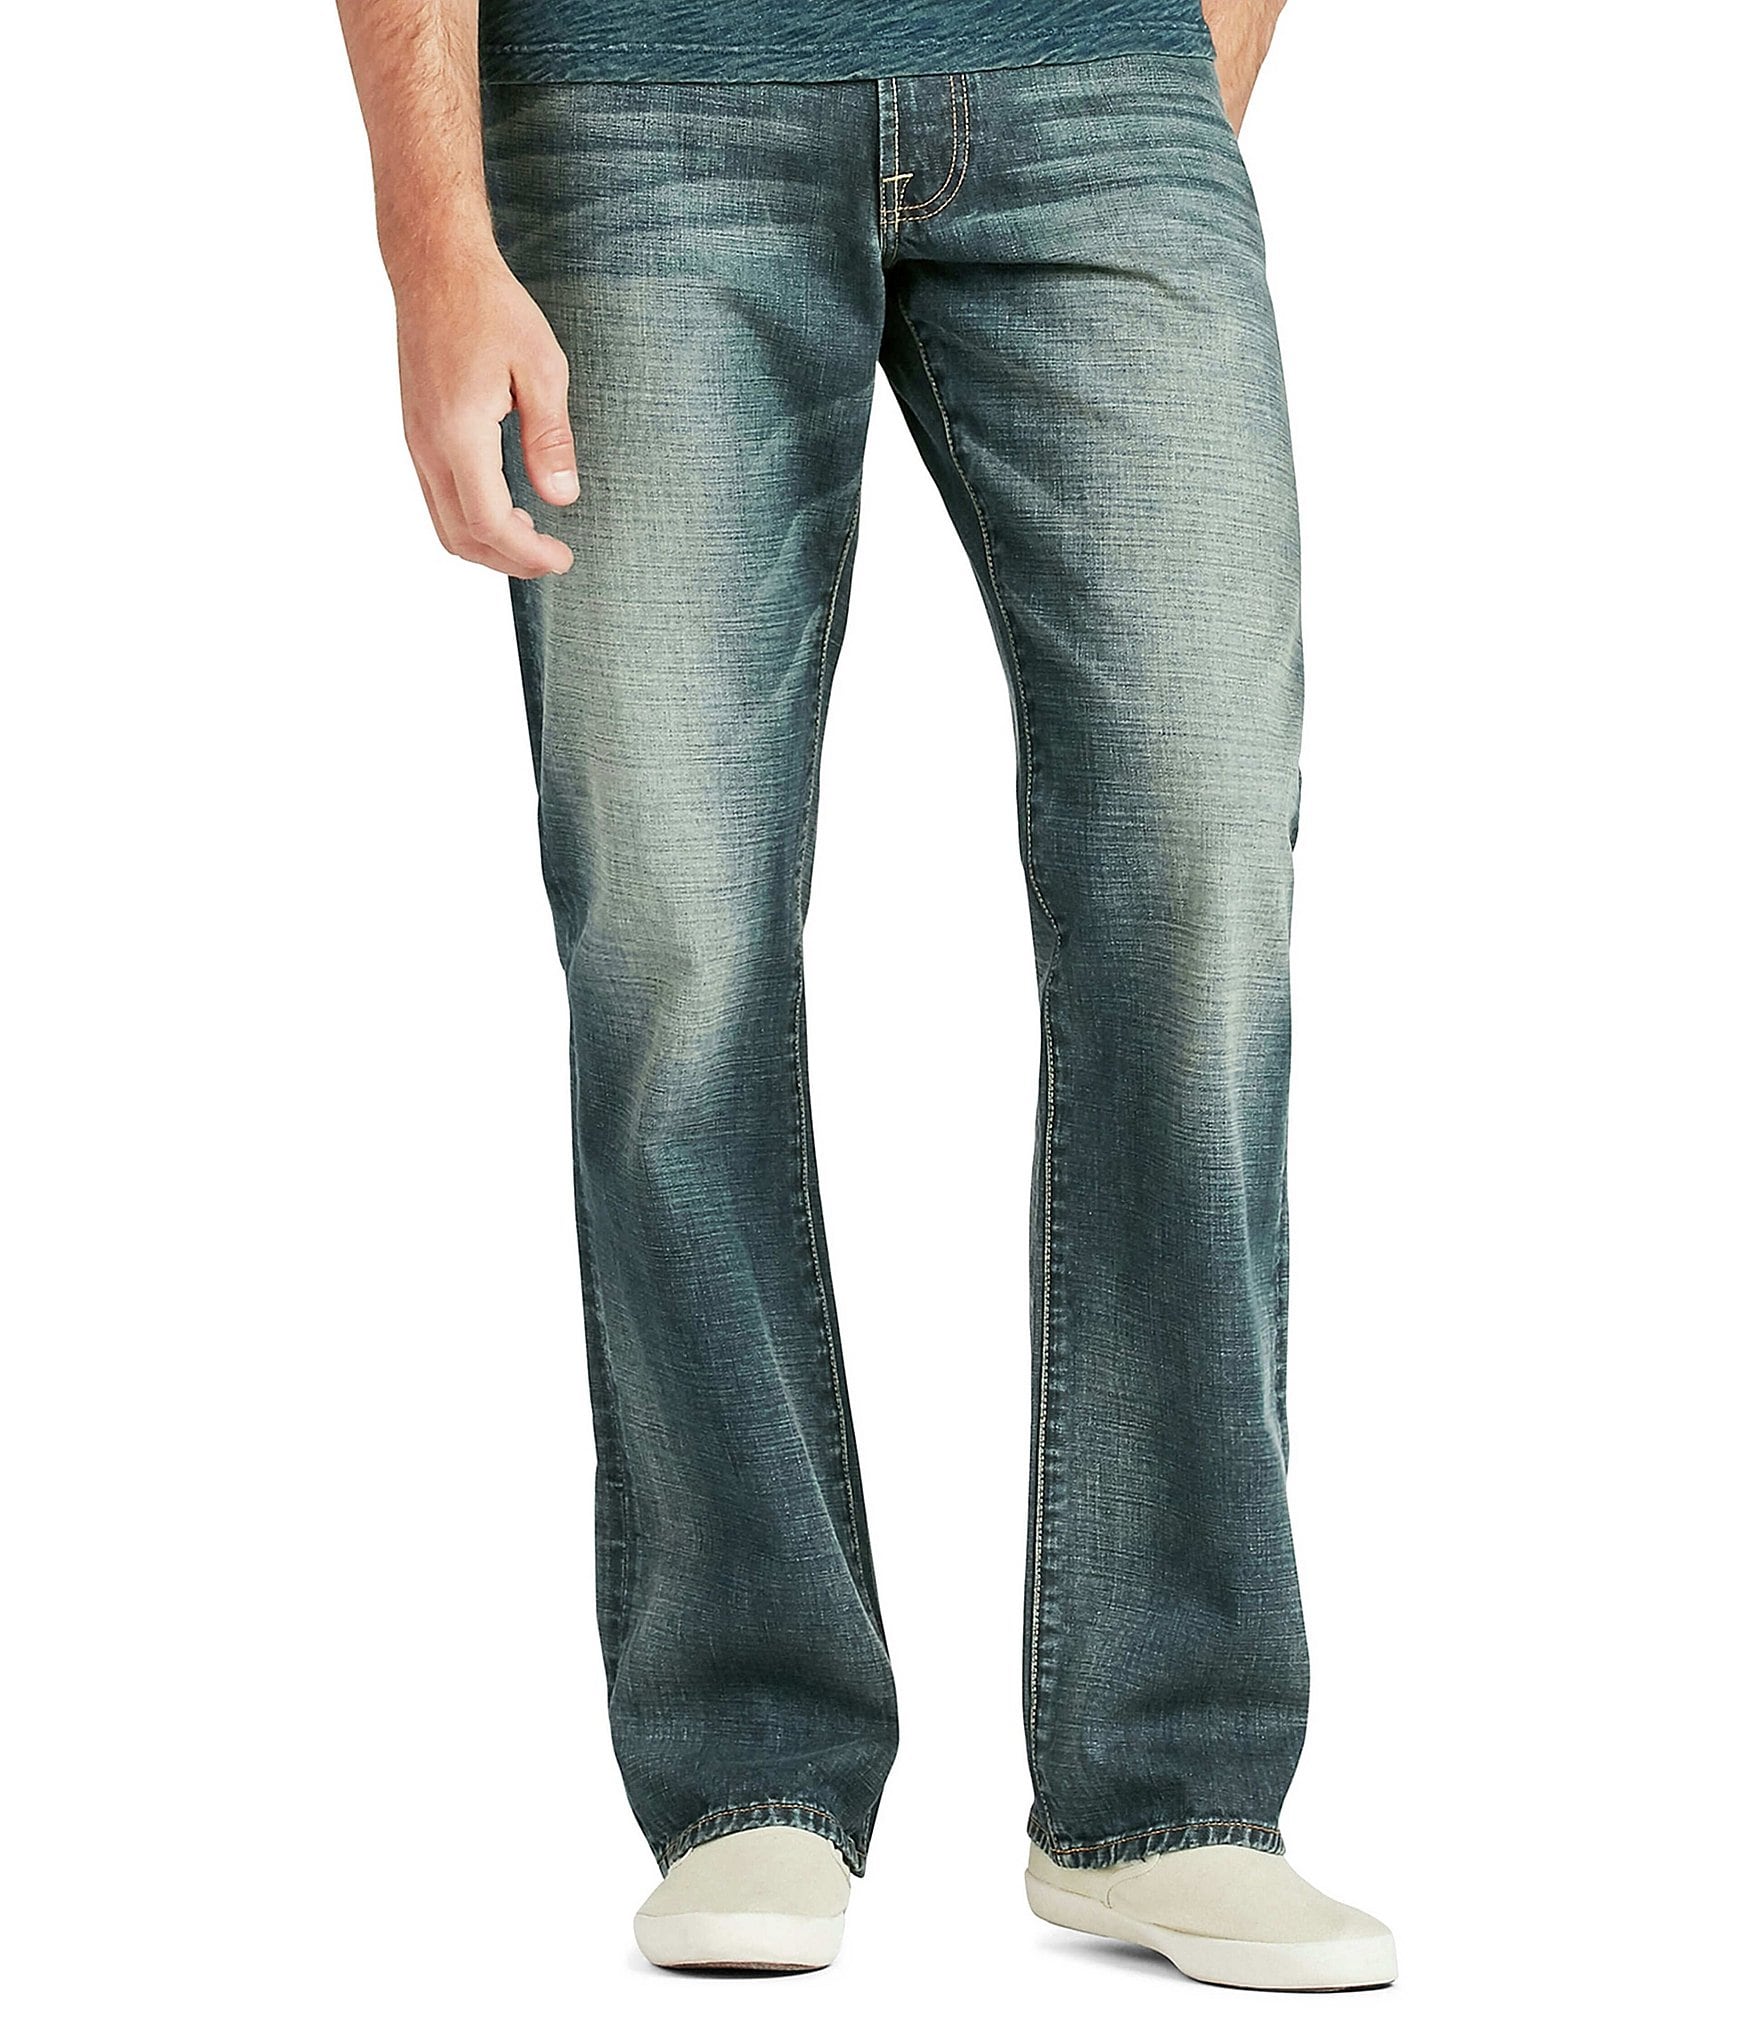 Pantalón Jeans P/caballero Lucky Brand, Mod 181 Relaxed, Ori